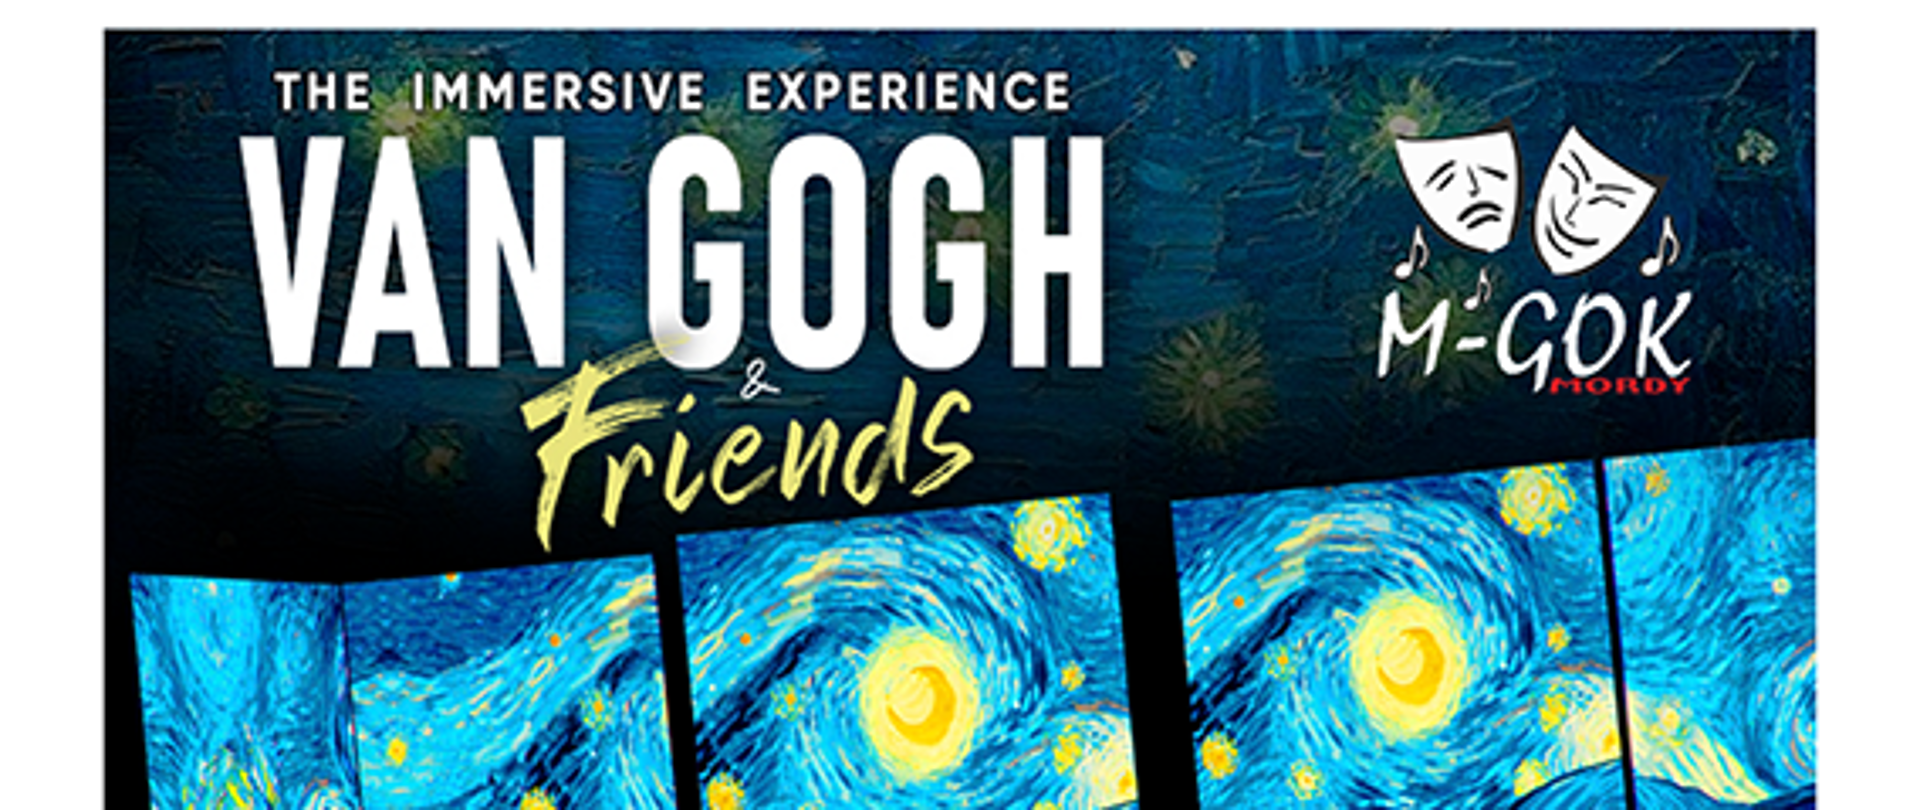 Wystawa VAN GOGH & Friends – Wycieczka z M-GOK